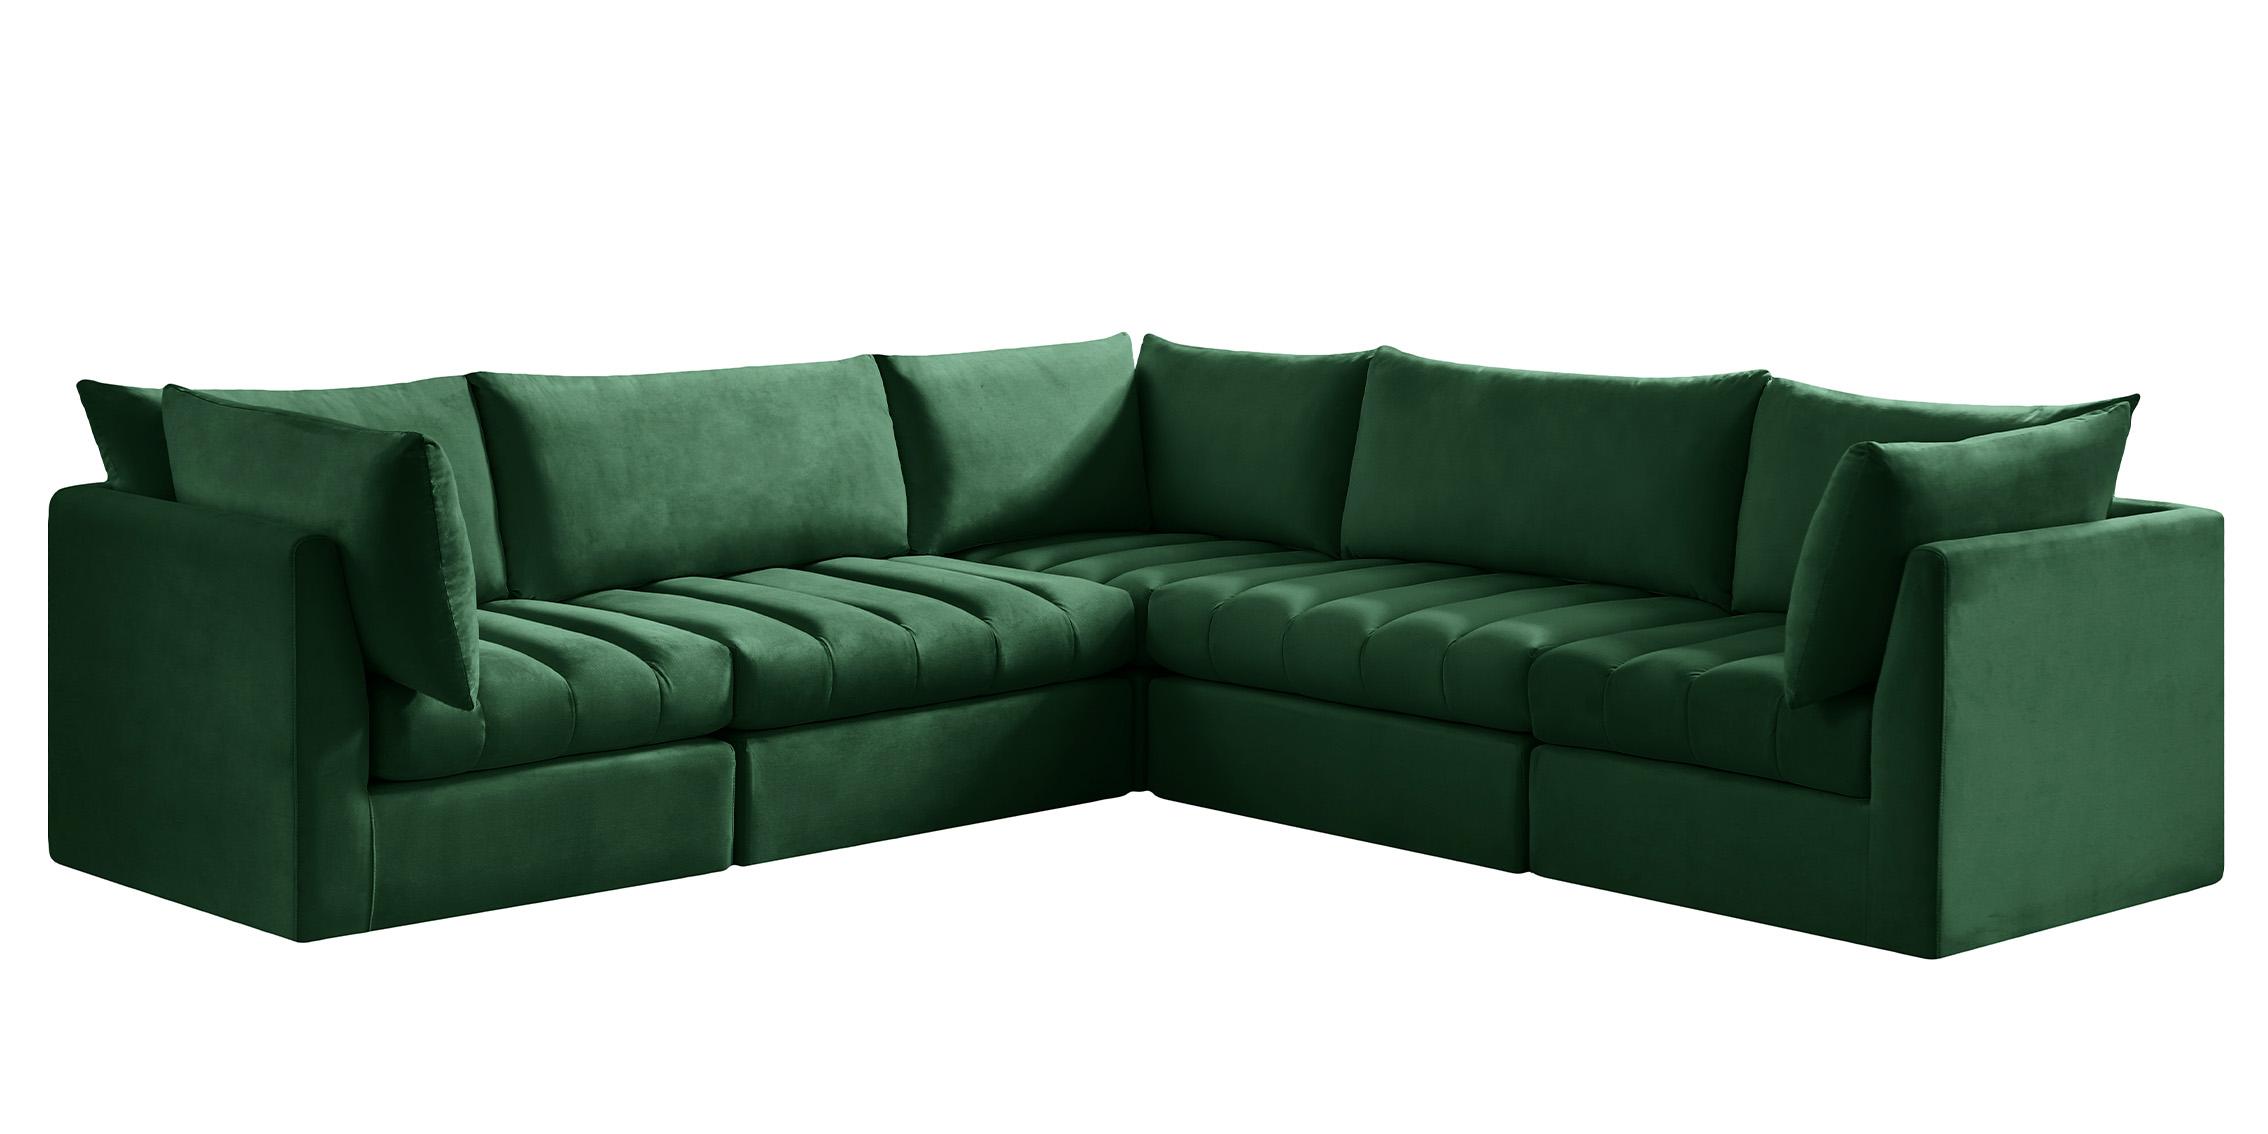 Meridian Furniture JACOB 649Green-Sec5C Modular Sectional Sofa